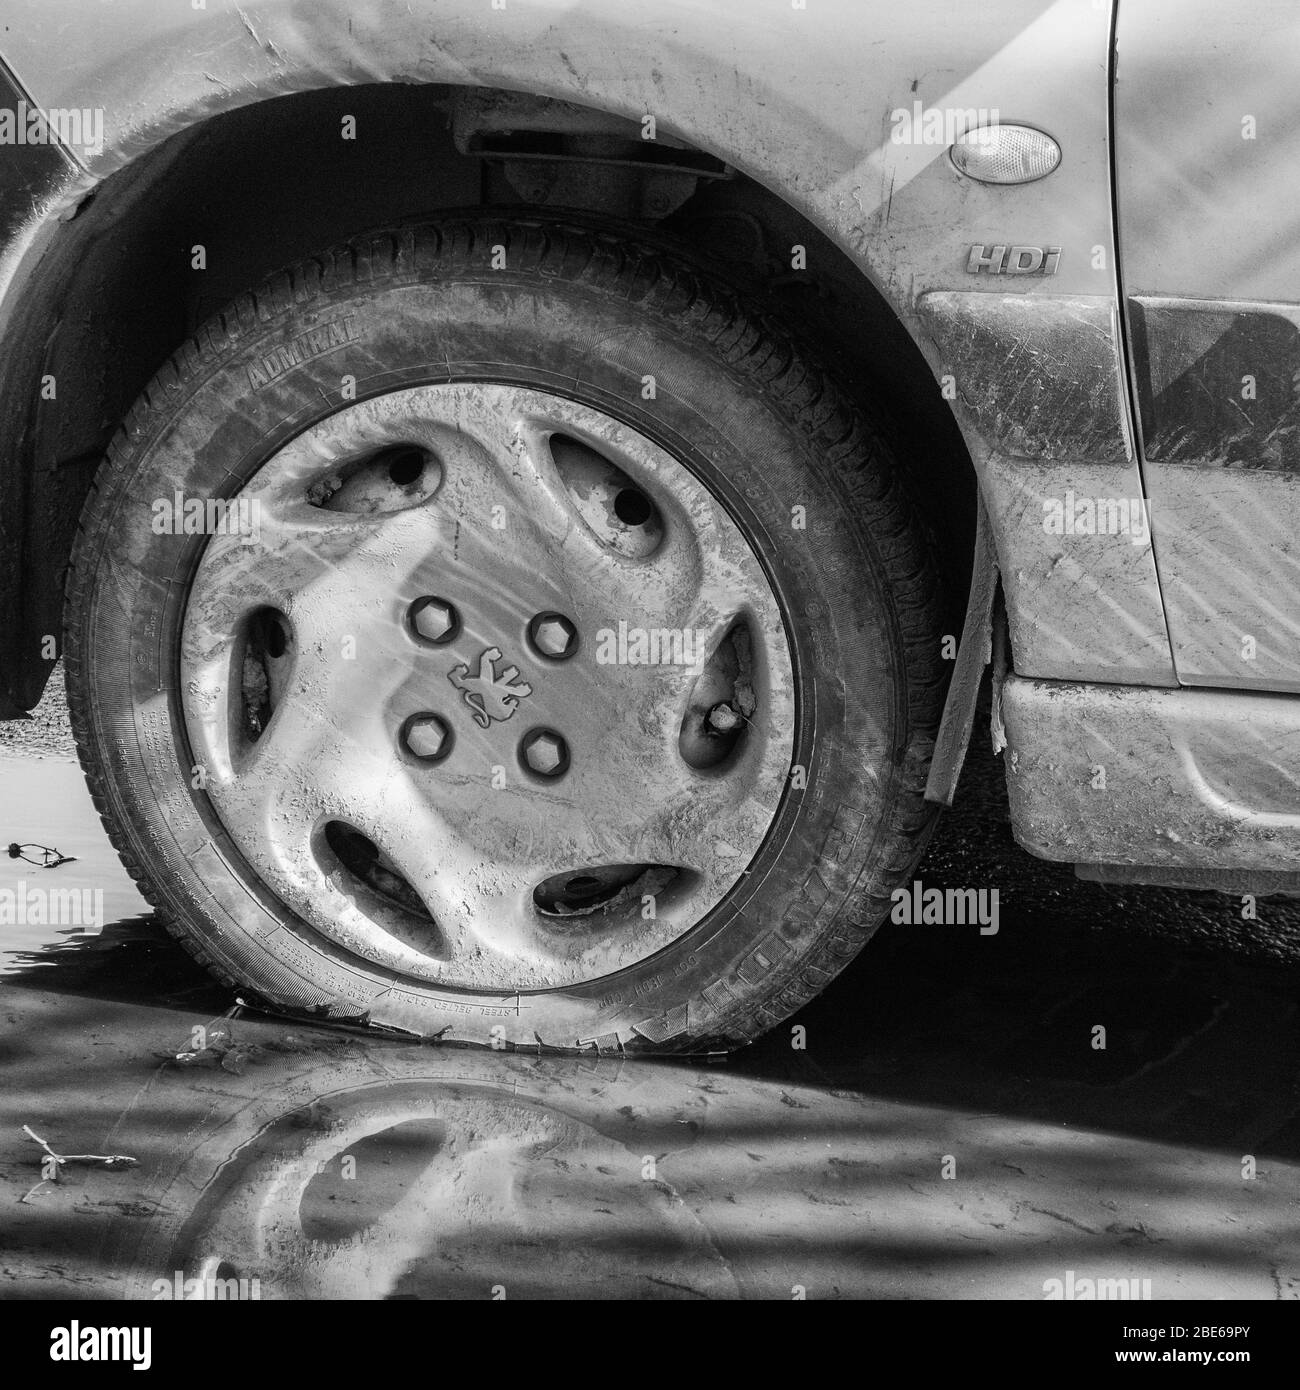 Noir et blanc éclatant de la roue / pneu et de la voûte d'une voiture Peugeot, avec le logo Peugeot marquelion visible sur le chapeau. IDH mais modèle précis inconnu. Banque D'Images